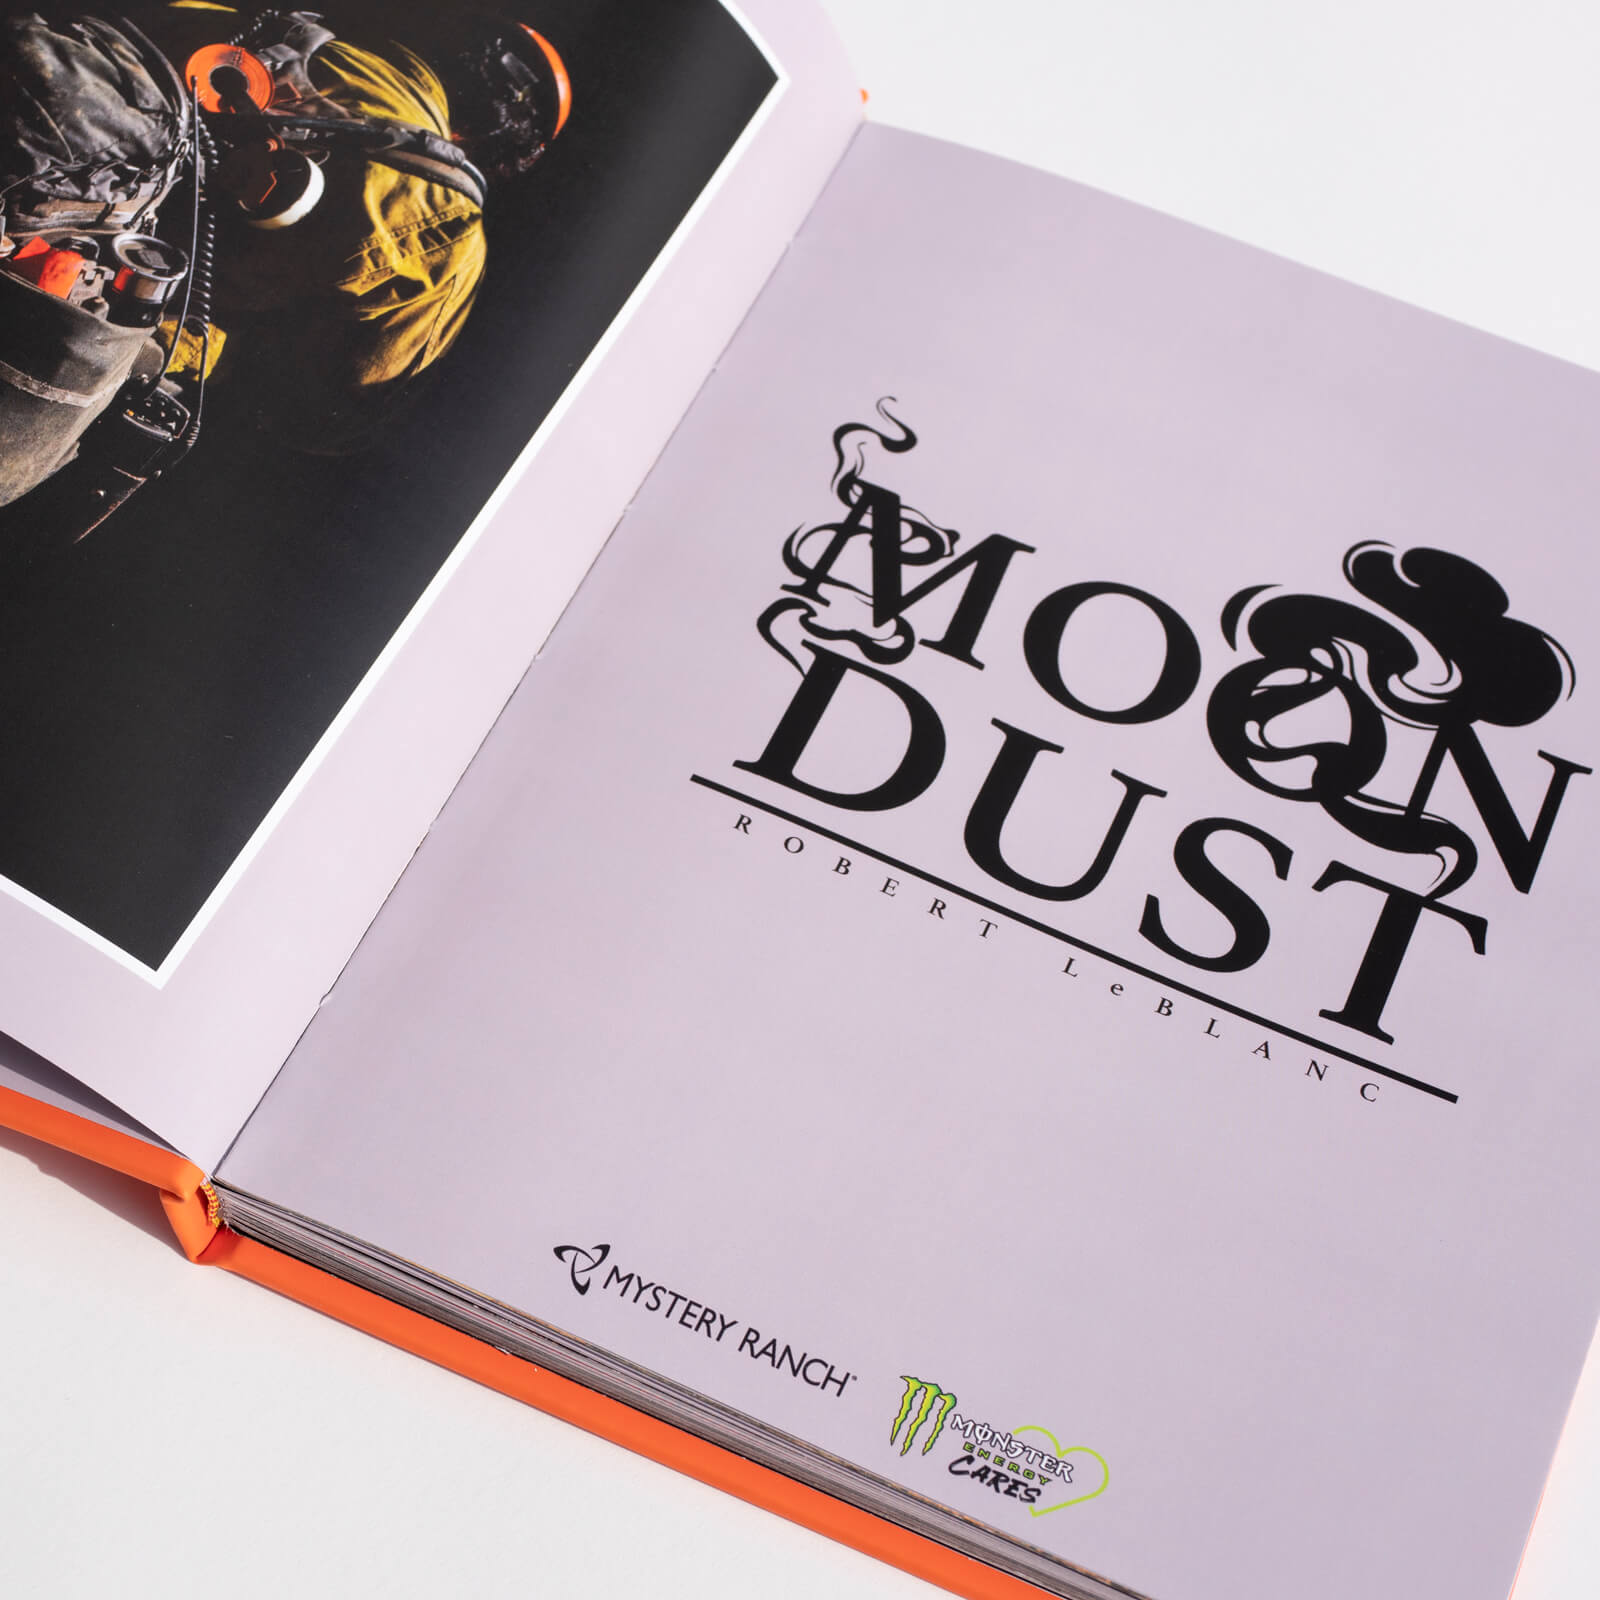 Moon Dust Book